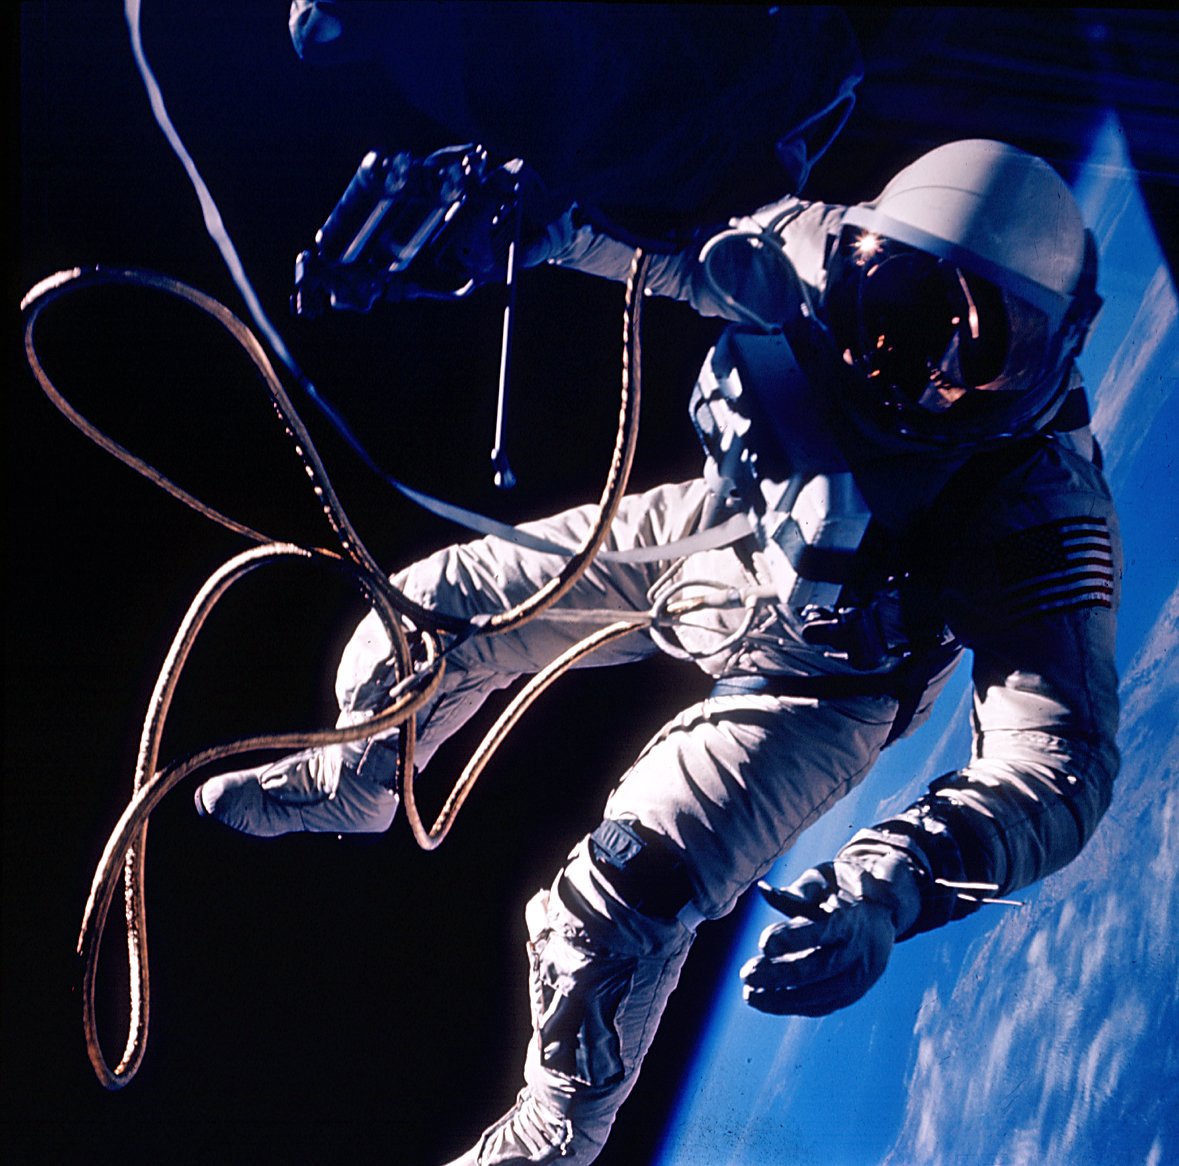 ed-white-3-haziran-1965-tarihinde-amerika-birlesik-devletlerinin-ilk-uzay-yuruyusunu-yapti